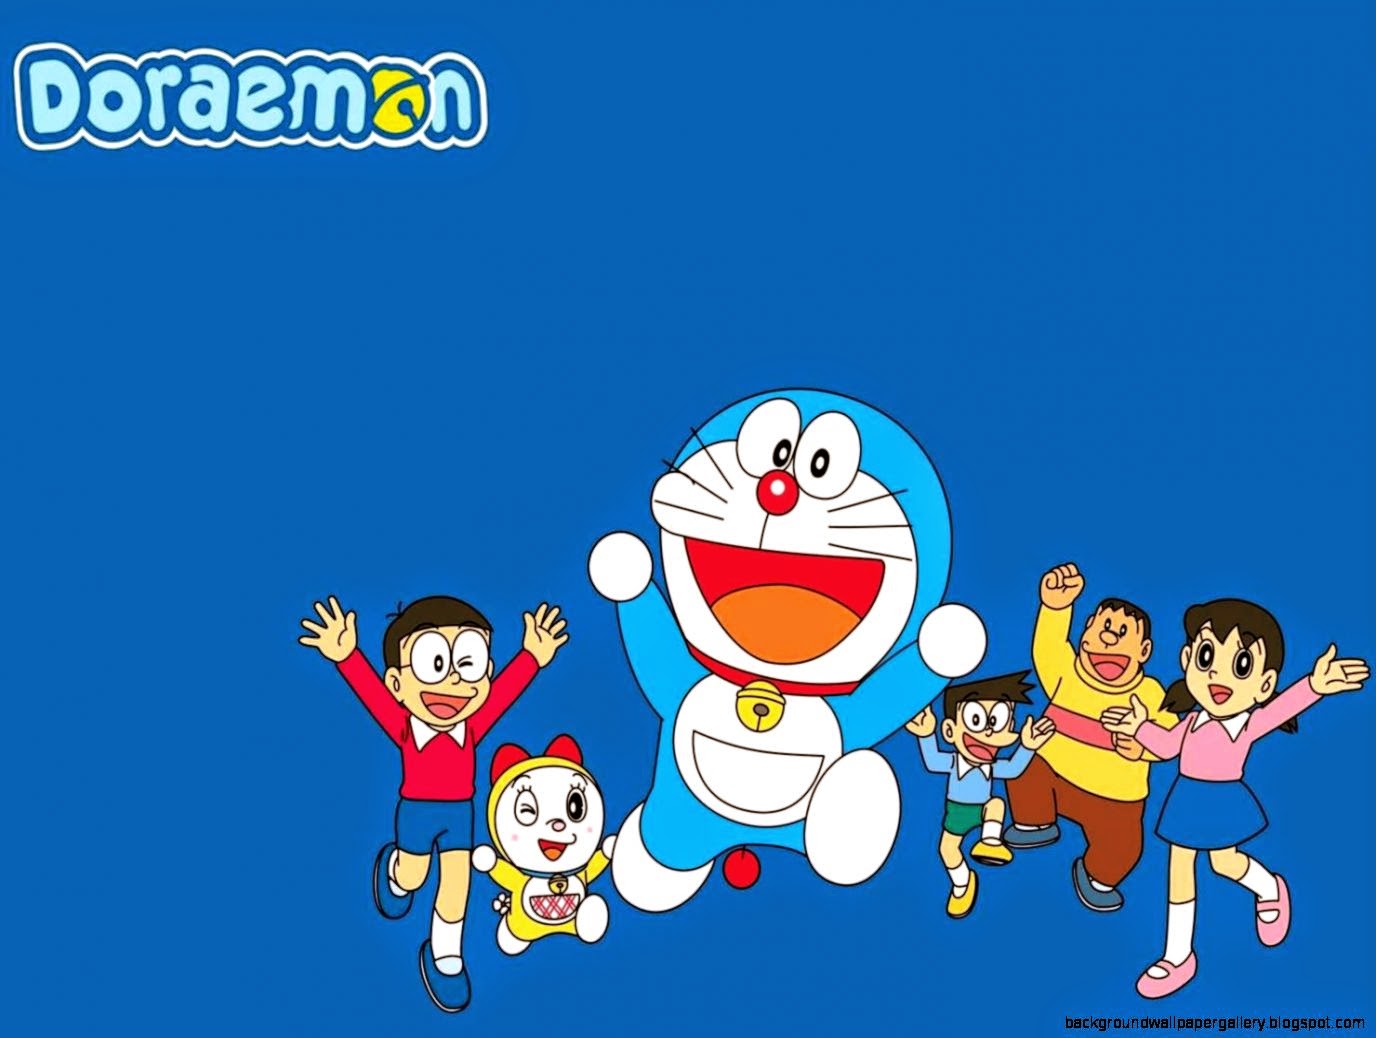 Wallpaper Doraemon For Desktop Background Wallpaper Gallery